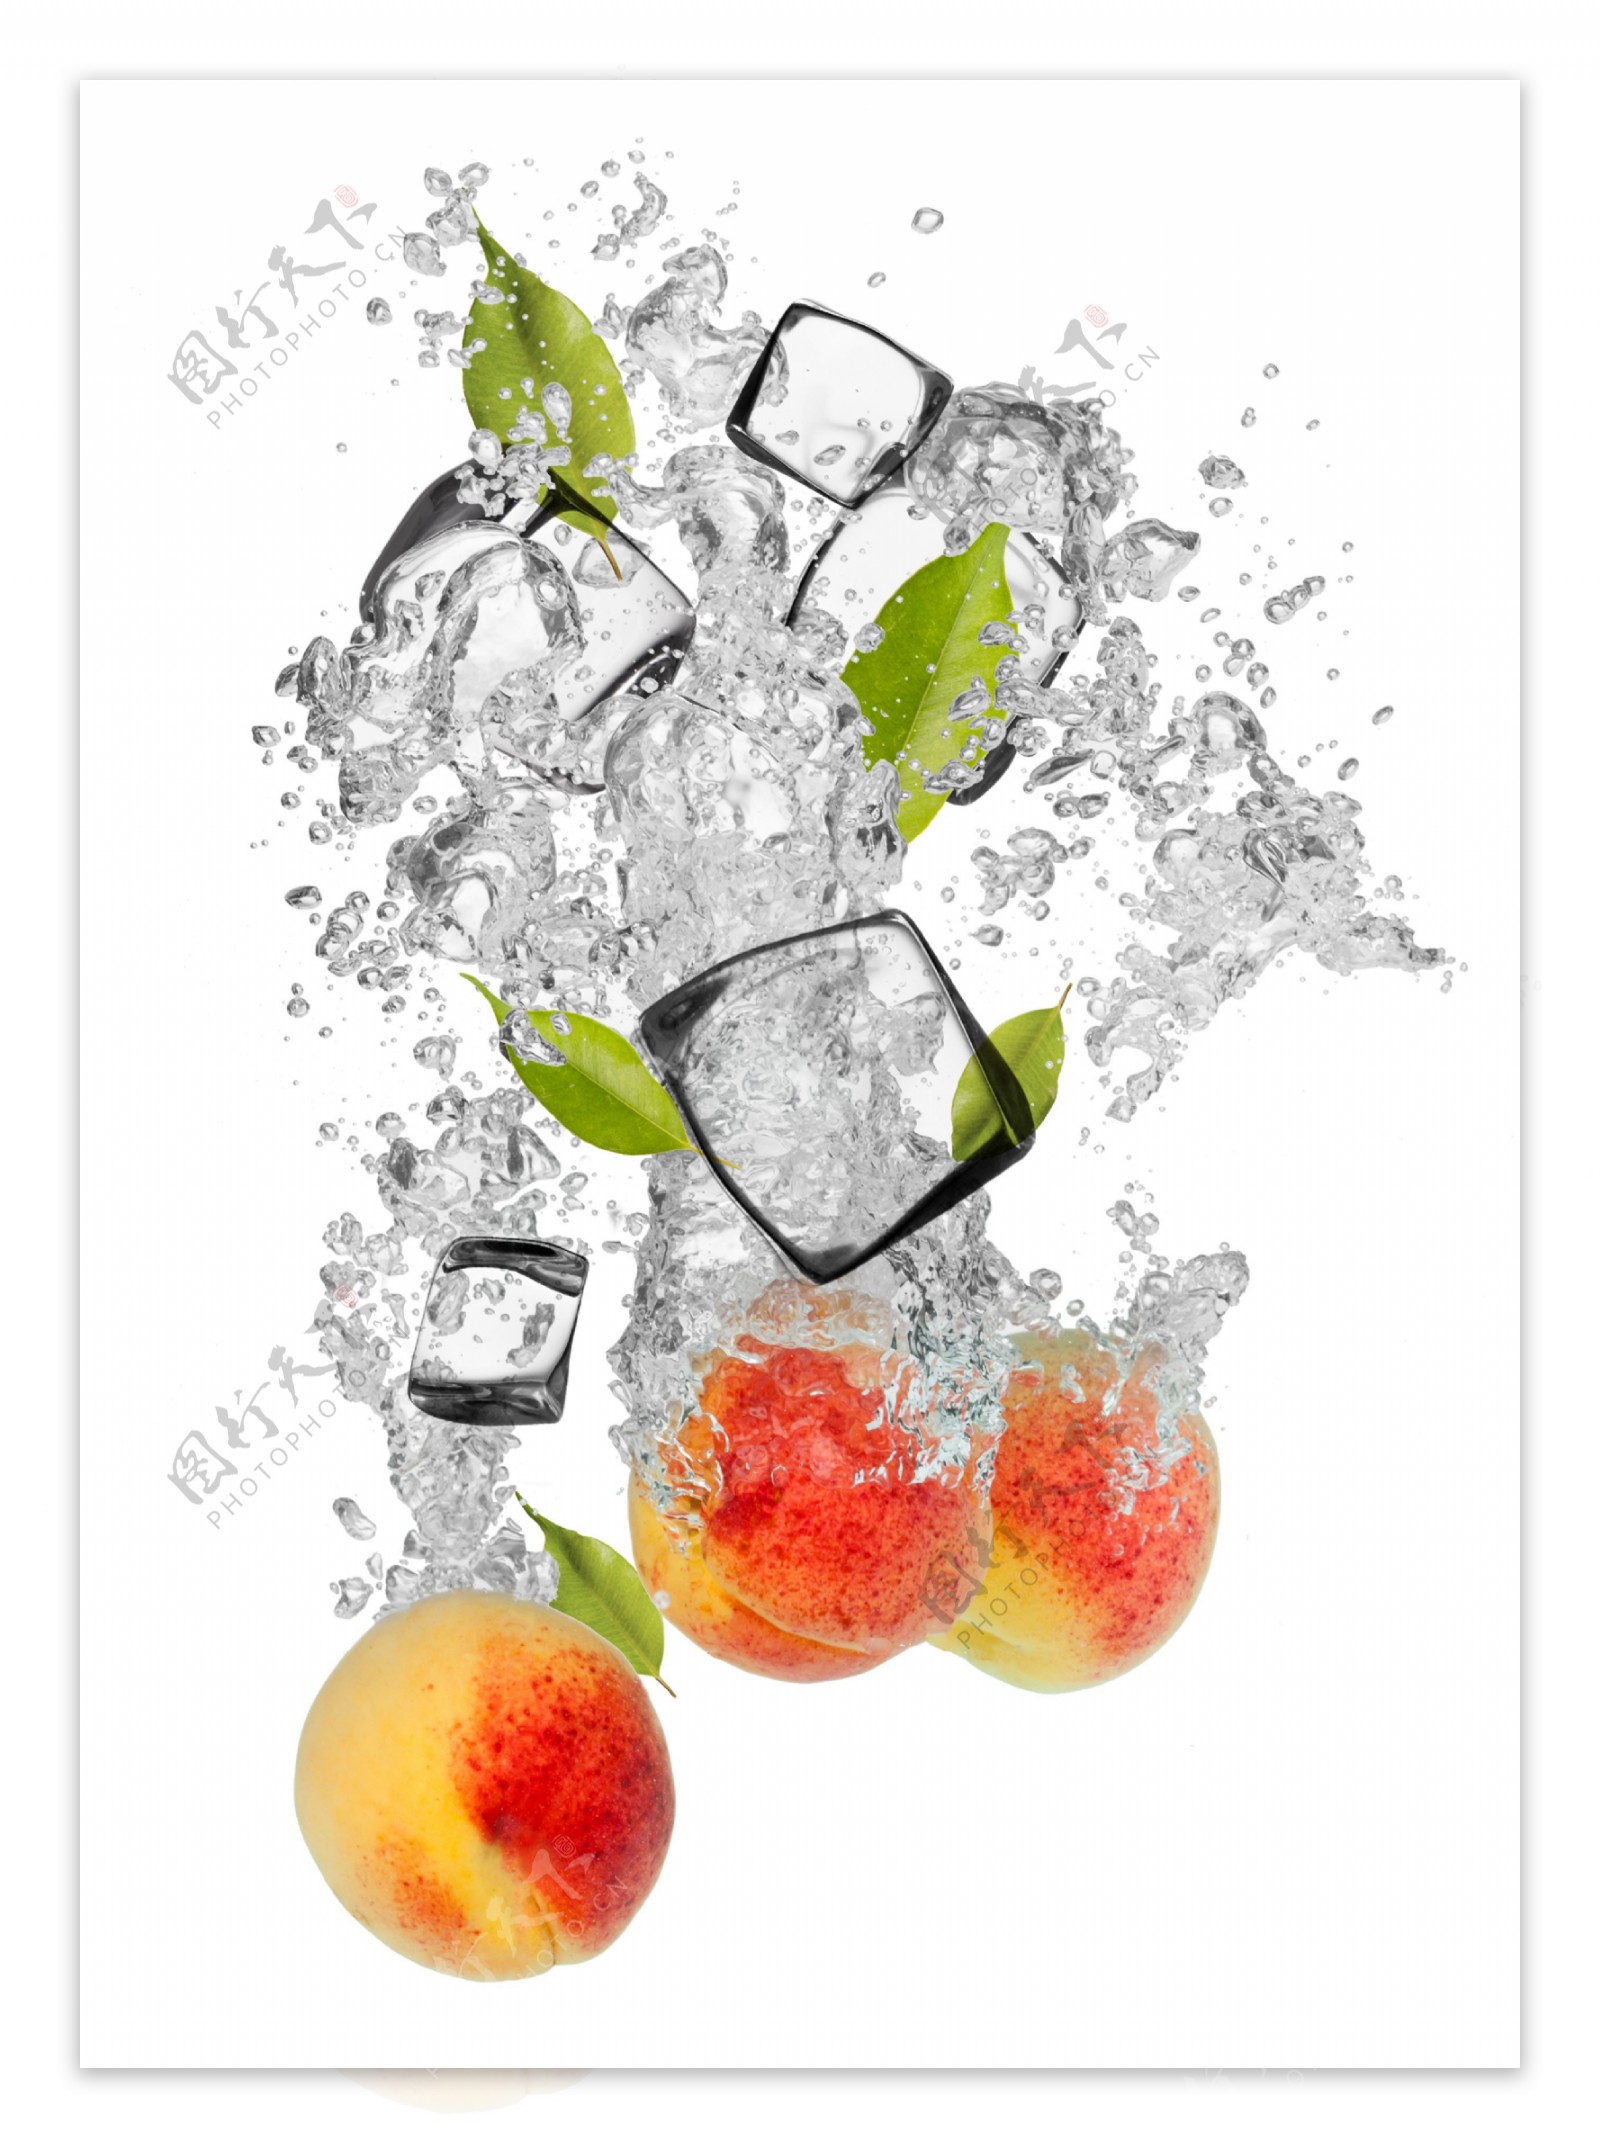 冰块和桃子图片